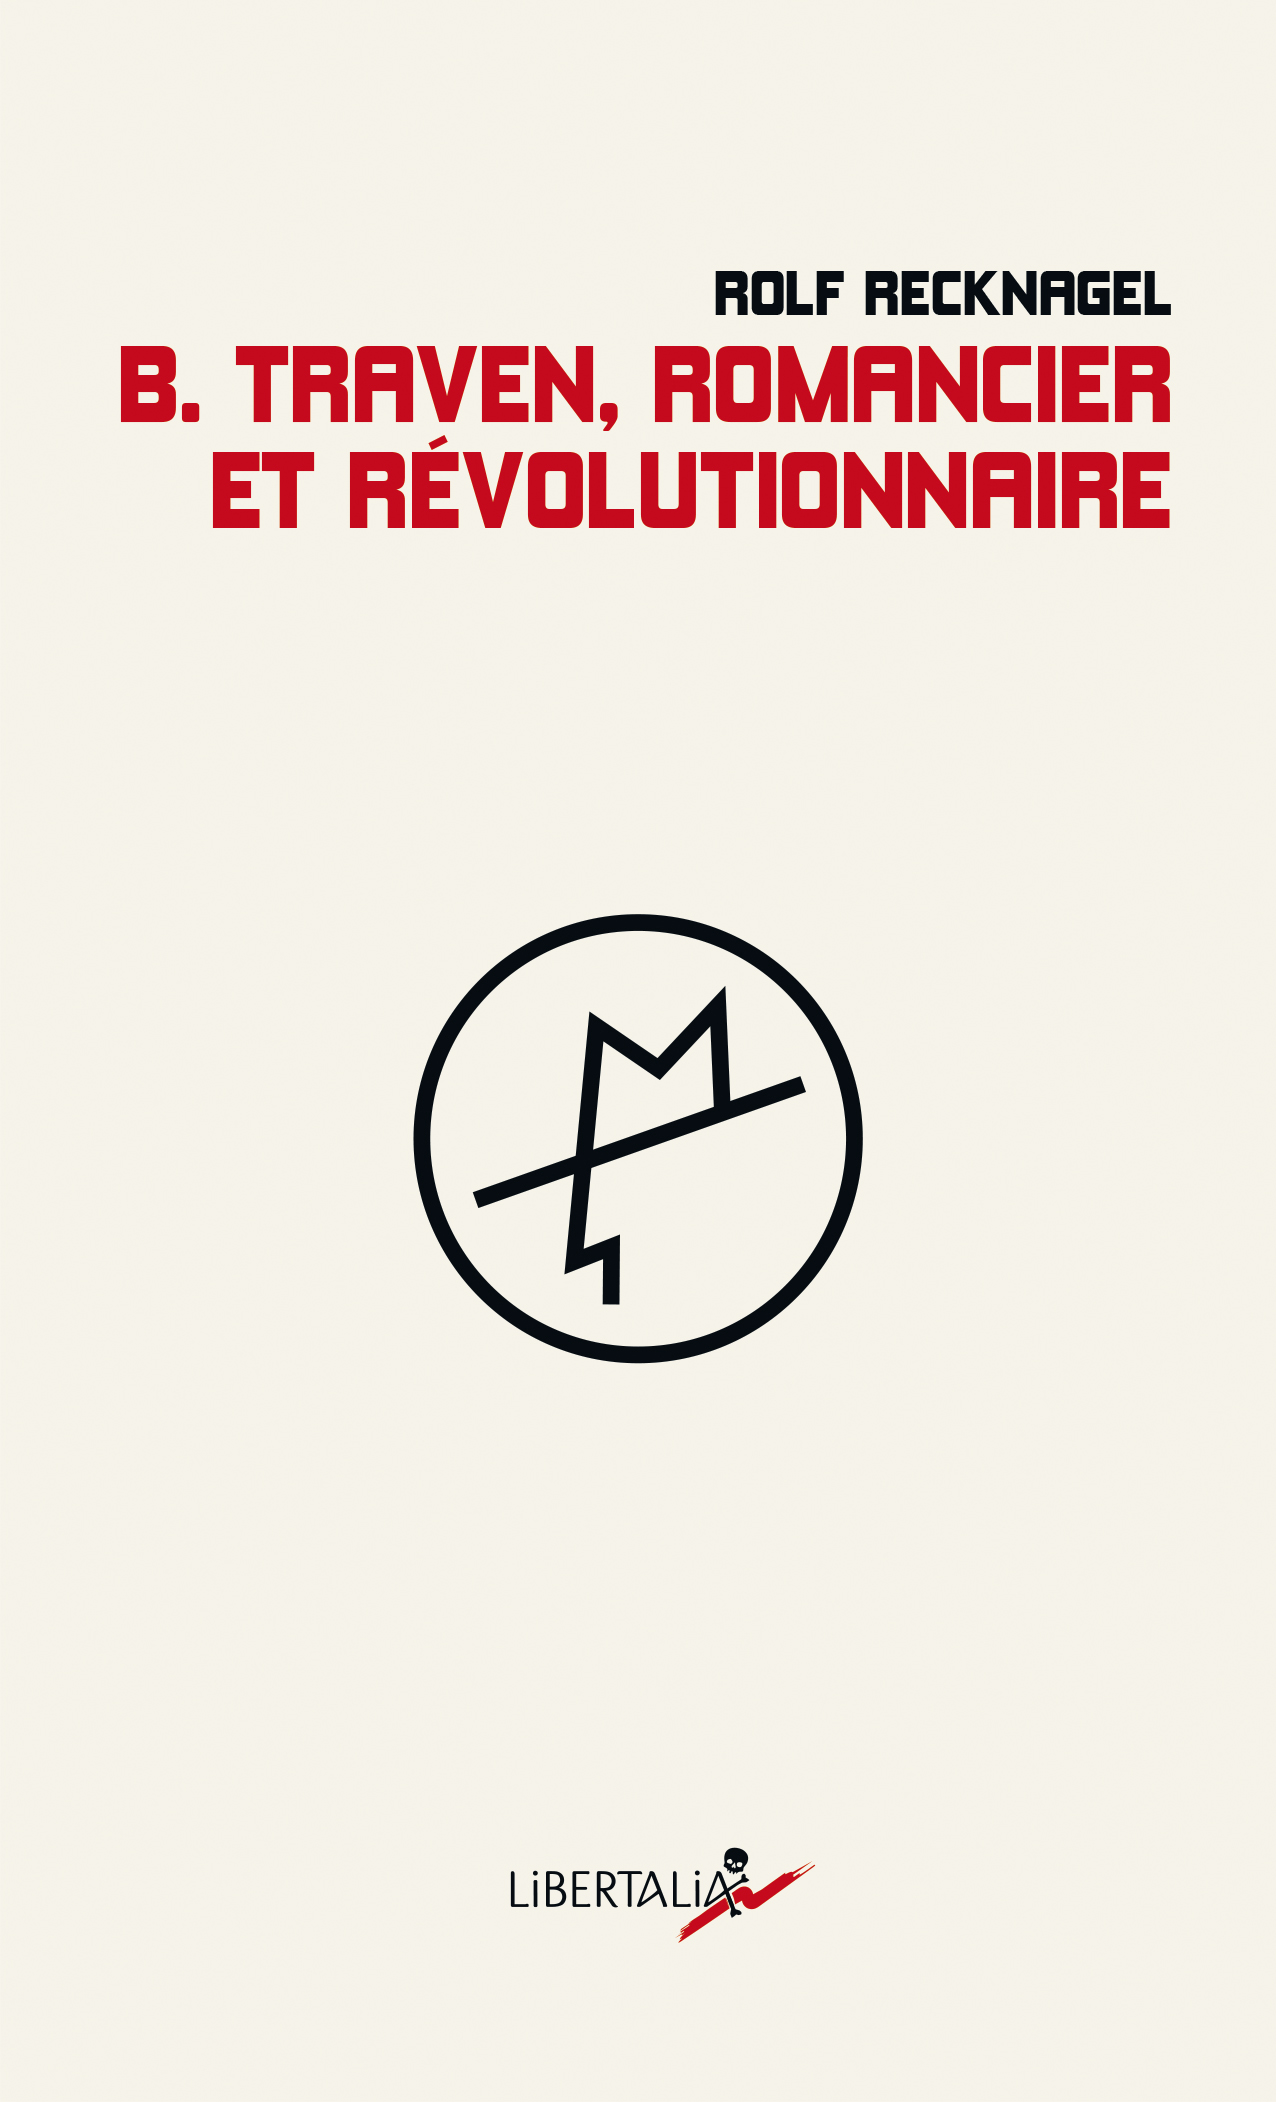 libertalia-b_traven_romancier_et_revolutionnaire-couv_web_rvb.jpg